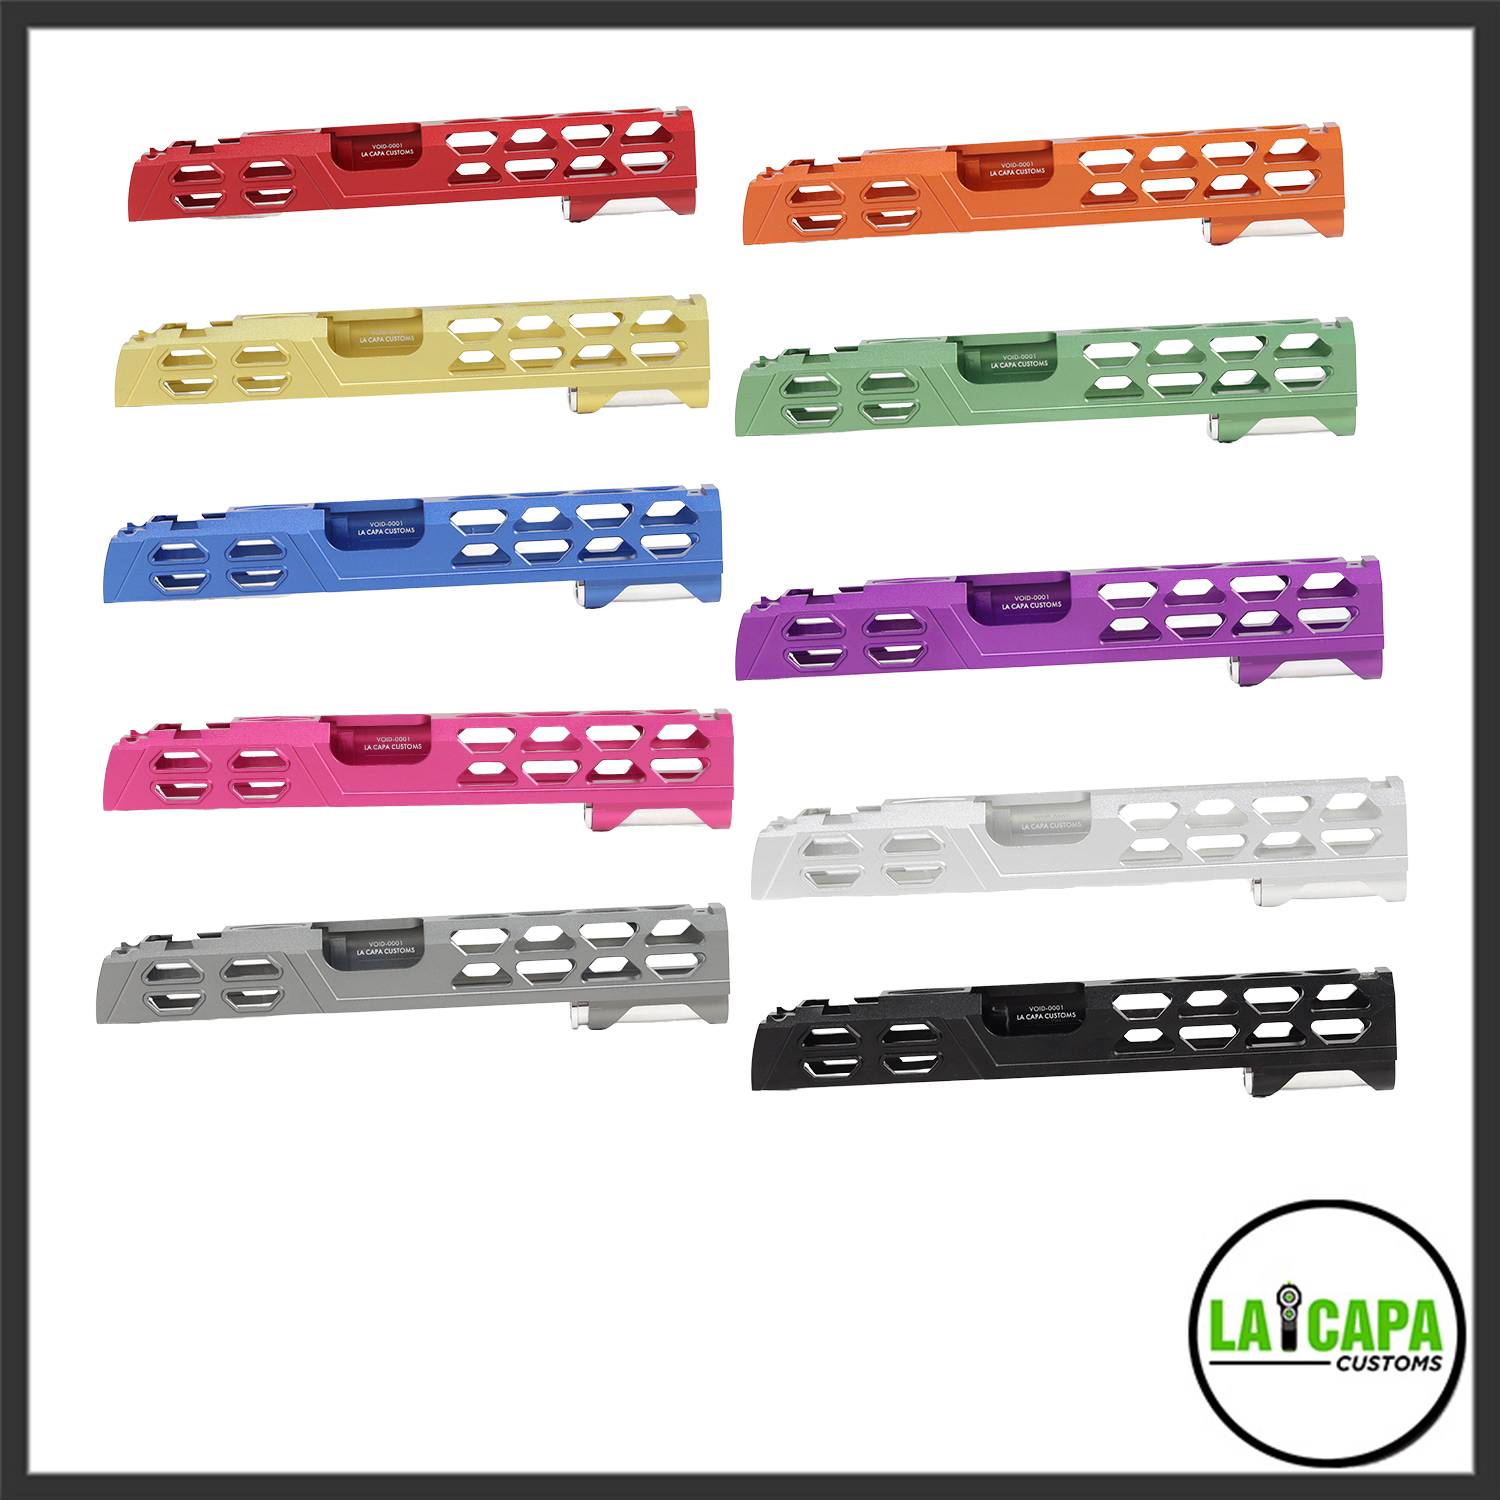 LA Capa Customs 5.1 “VOID” Aluminum Slide - Rainbow